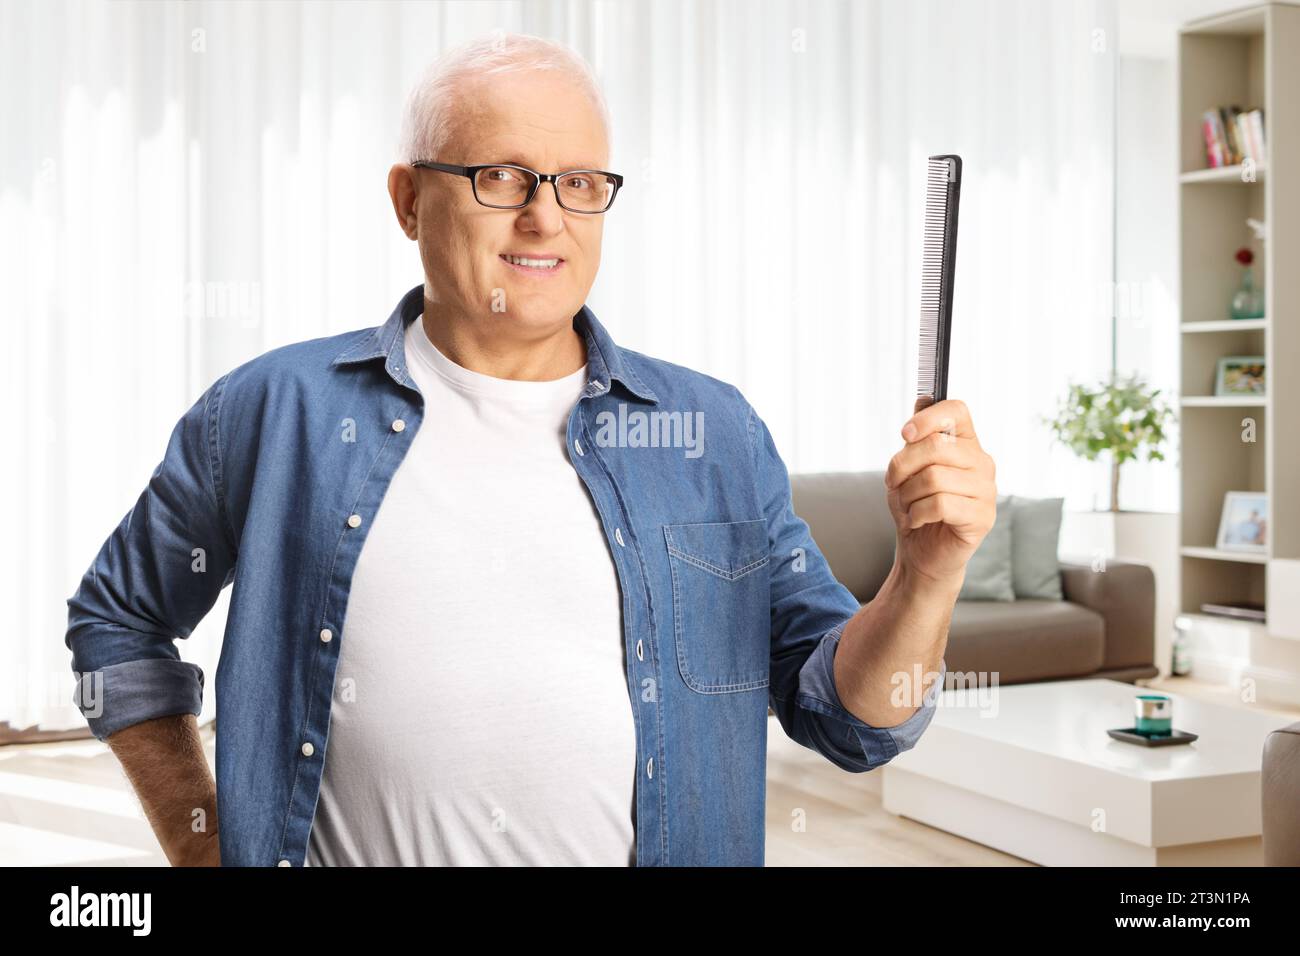 Reifer Mann mit weißem Haar, der zu Hause im Wohnzimmer einen Haarkamm hält Stockfoto